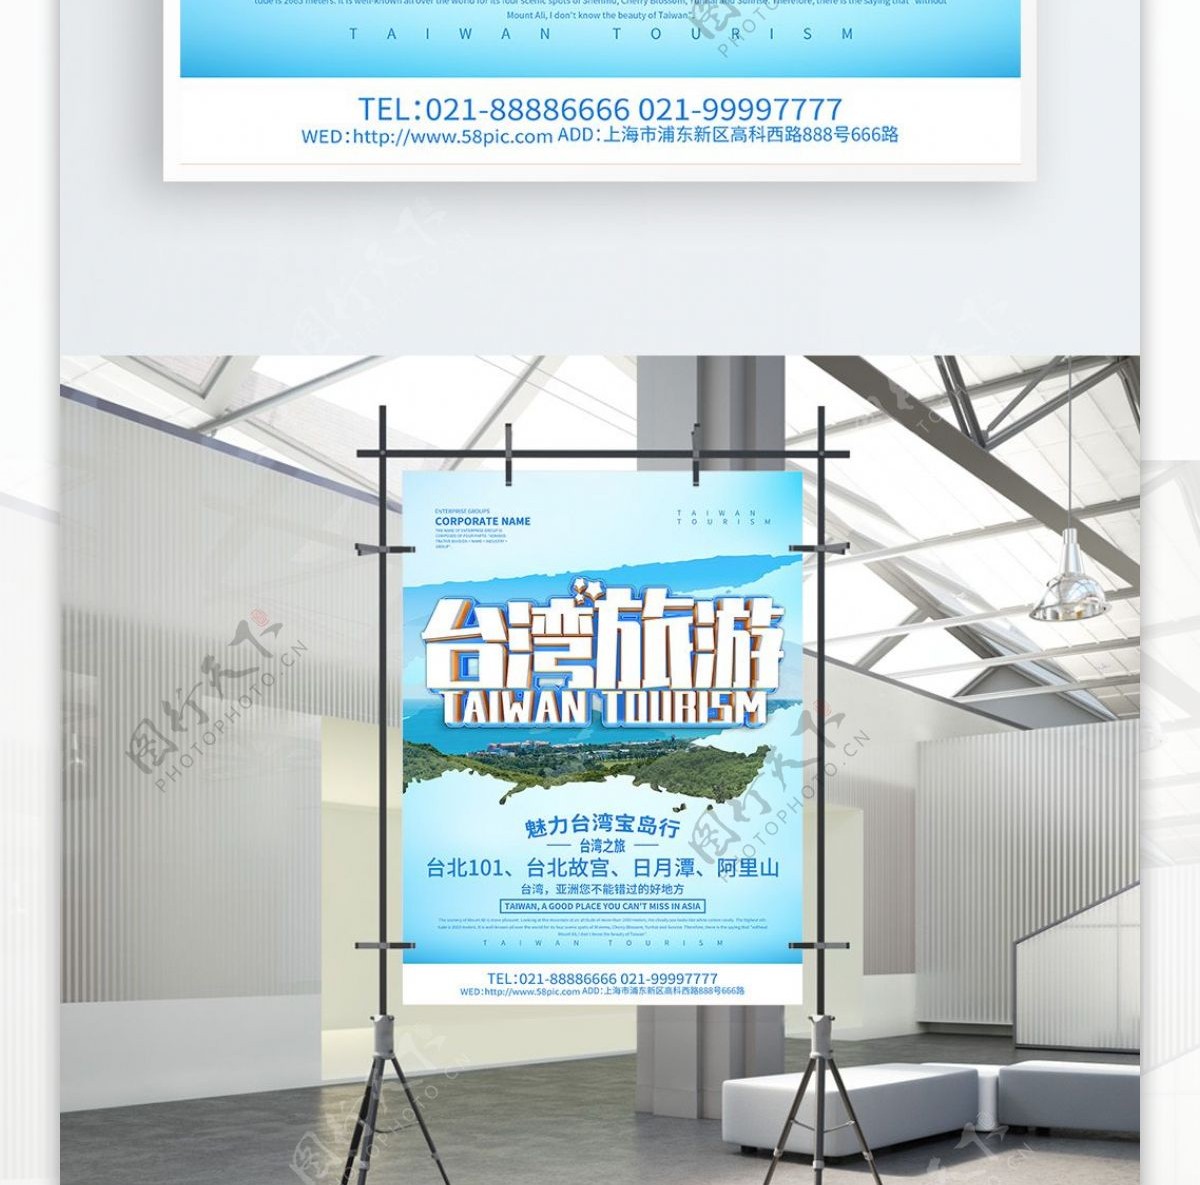 蓝色简约台湾旅游宣传海报设计